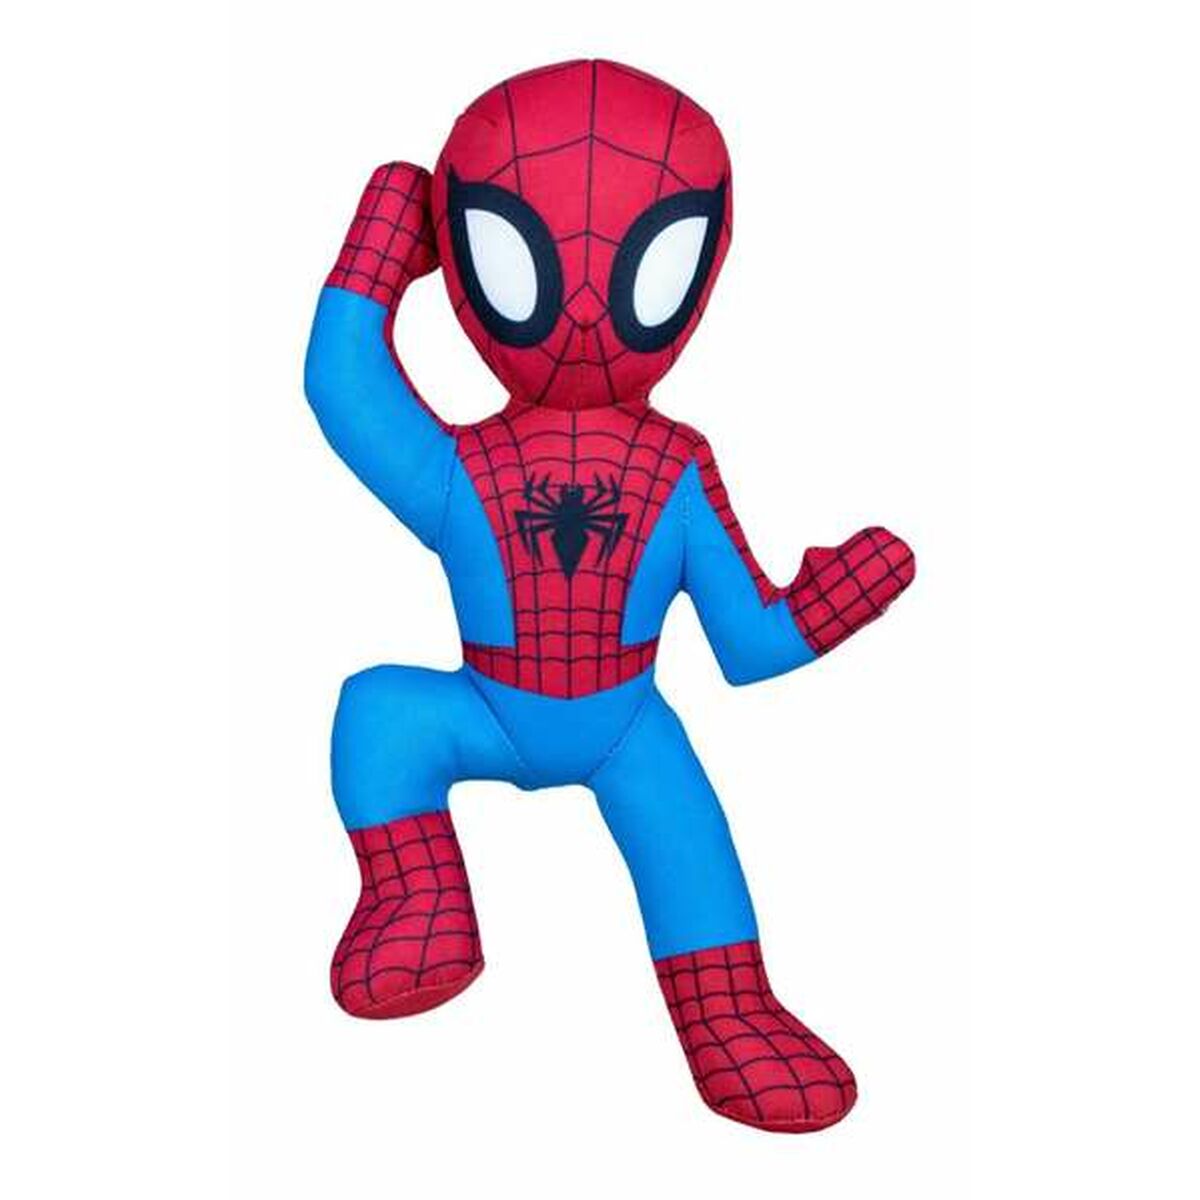 Fluffy toy Spider-Man 30 cm